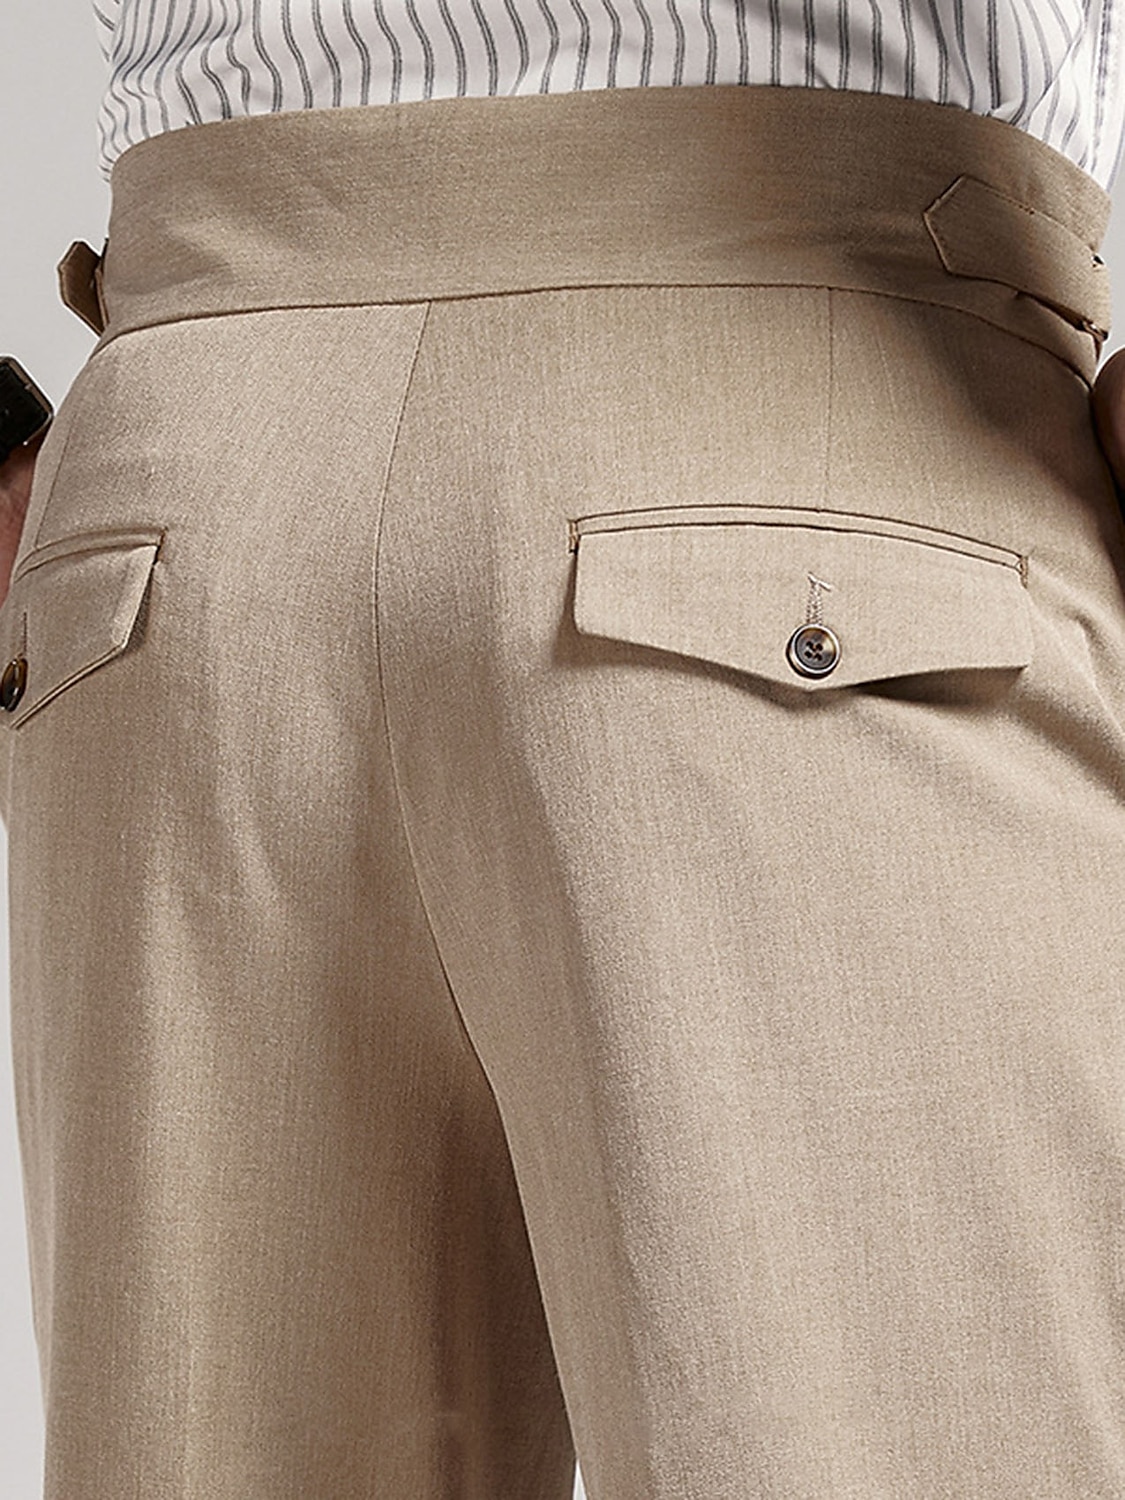 Men's Dress Pants Trousers Pleated Pants Suit Pants Gurkha Pants Pocket  High Rise Plain Comfort Breathable Outdoor Daily Going out Vintage Elegant Black  Khaki 2024 - $39.99